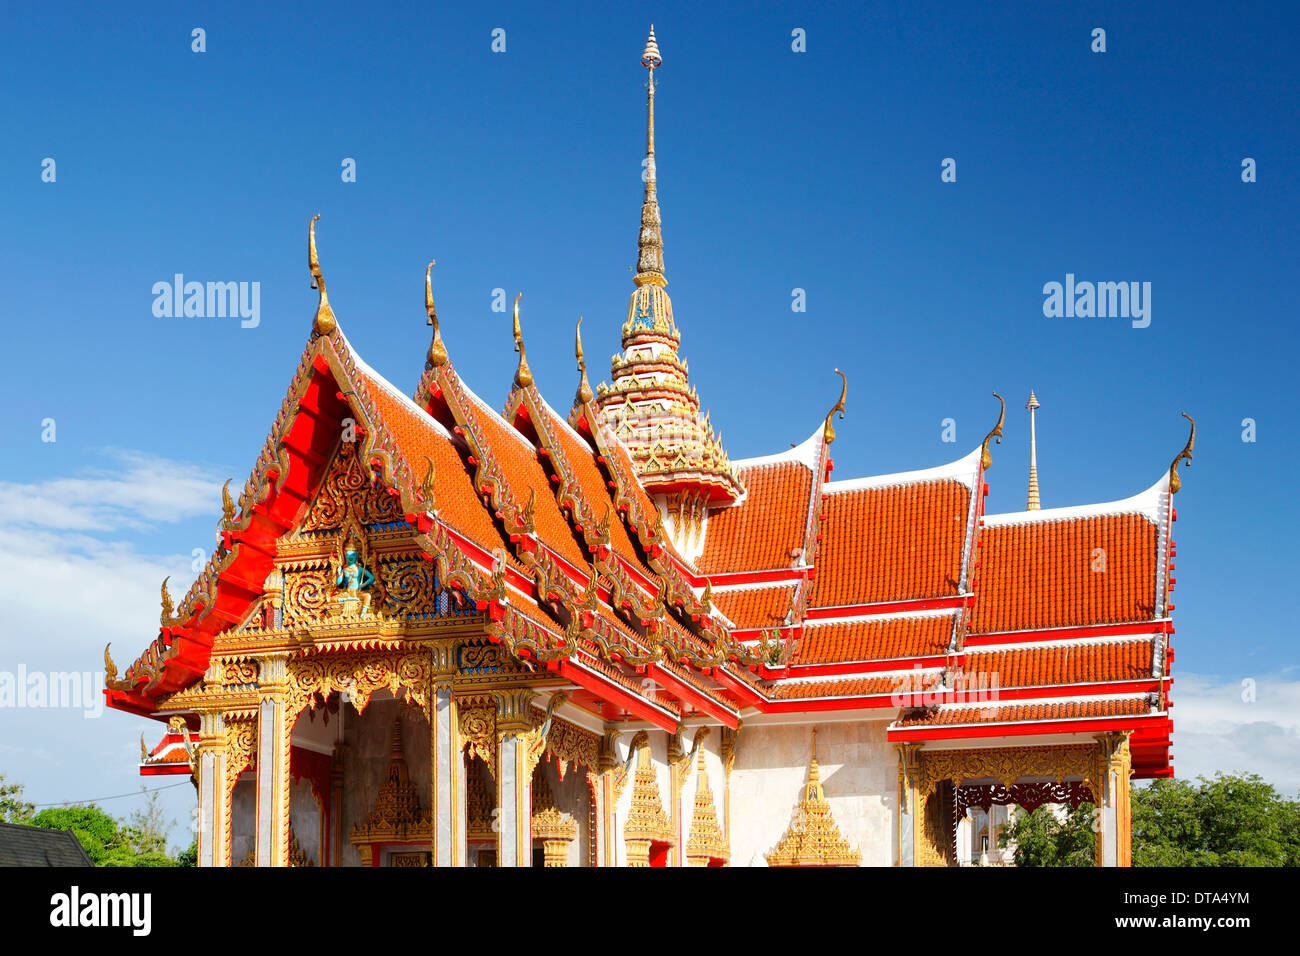 Toit orné de la pagode, Wat temple de Chalong, Phuket, Thailand Banque D'Images